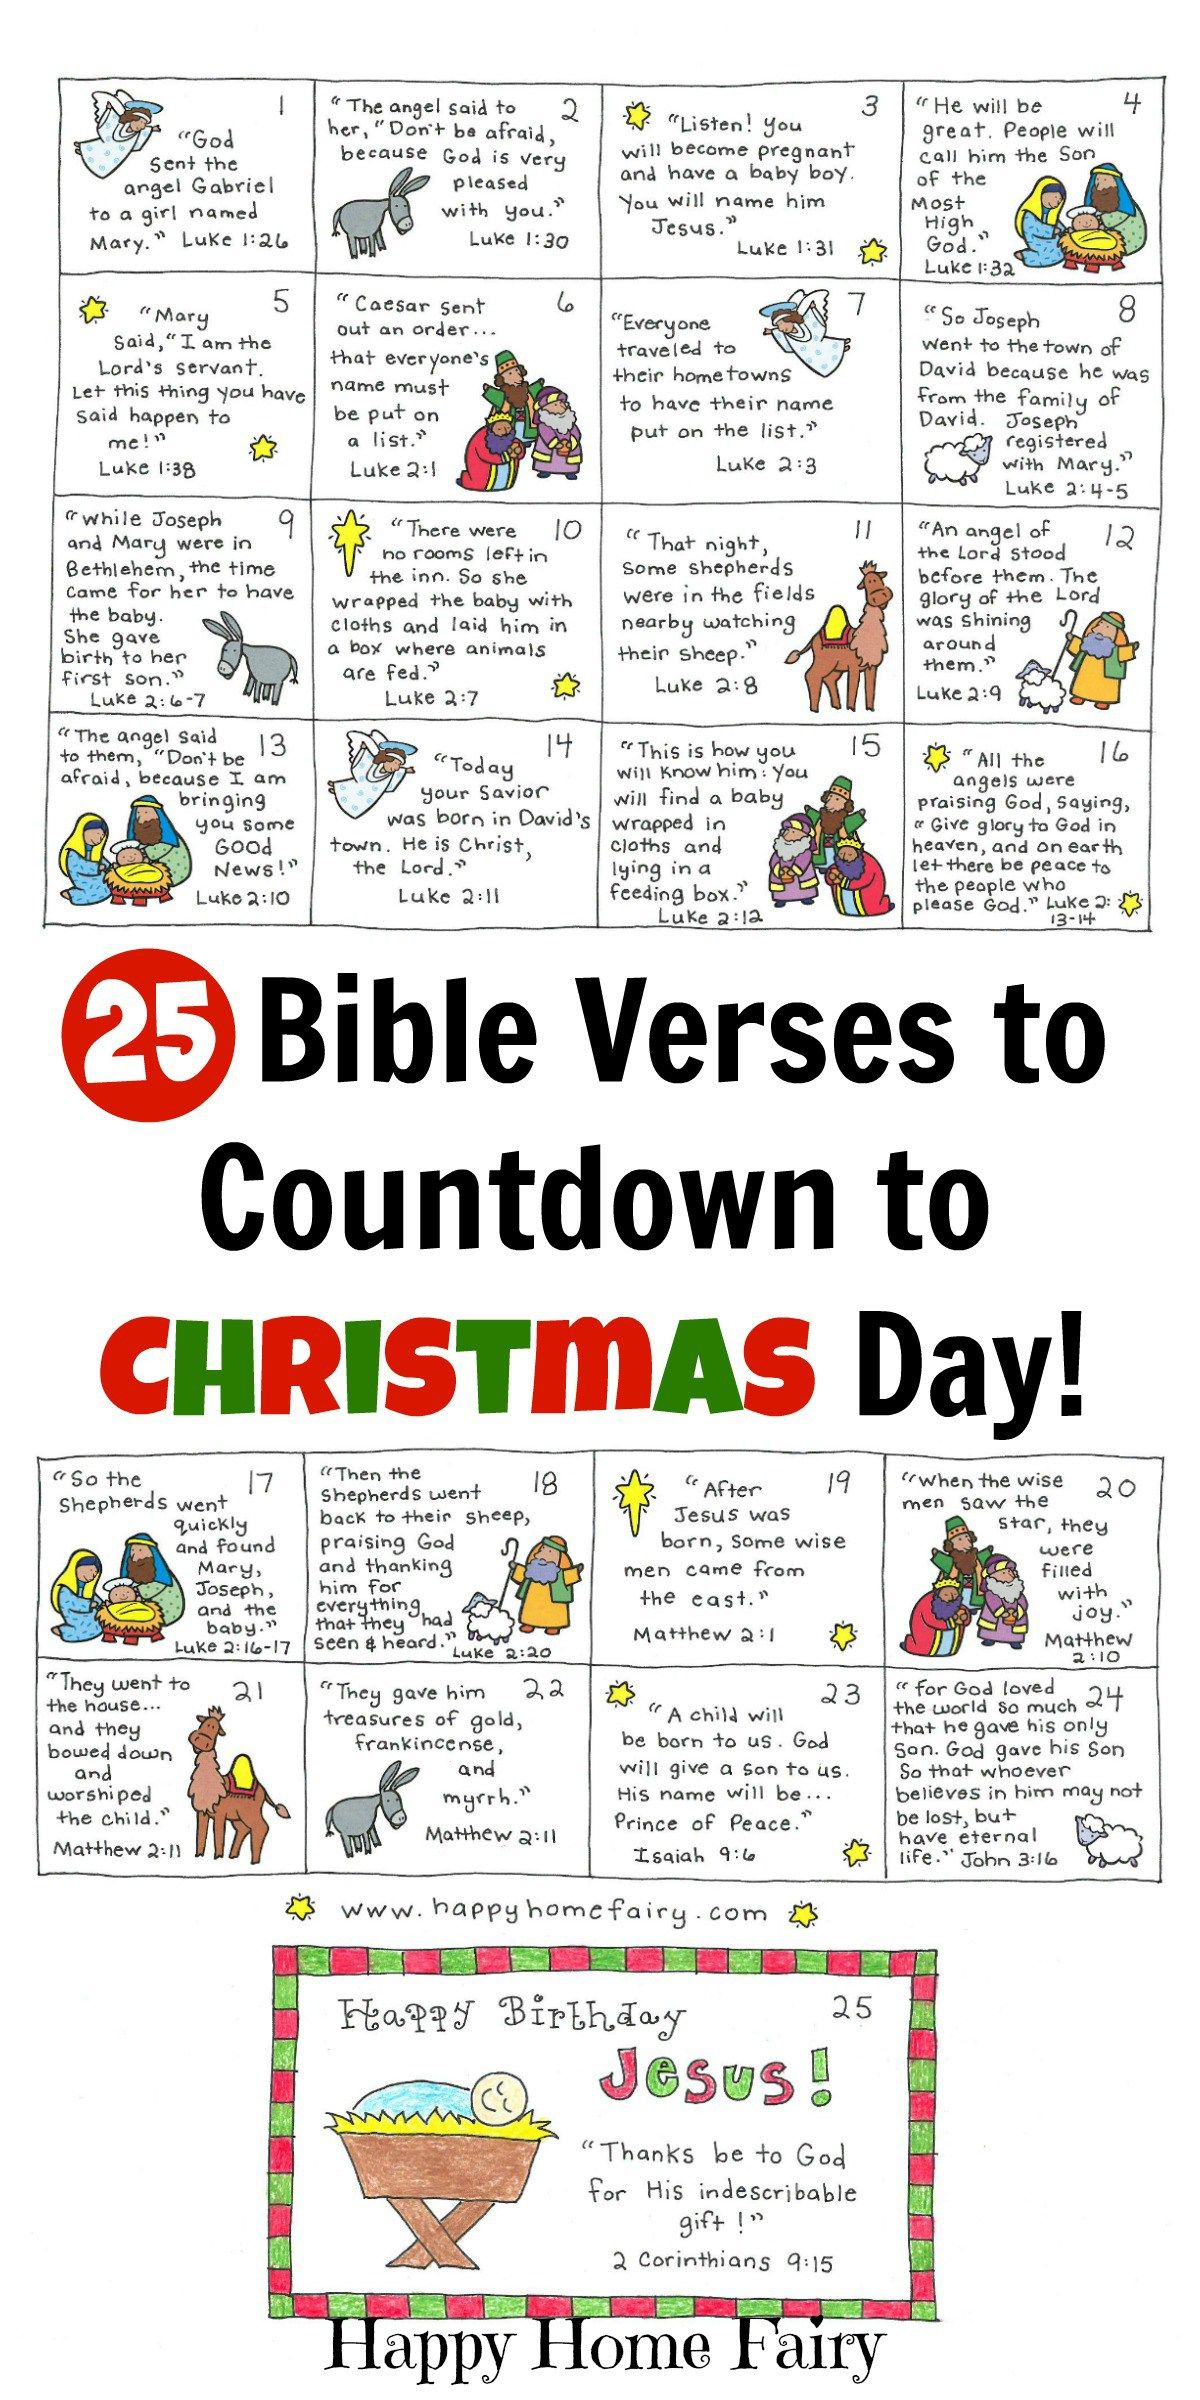 Free Printable Religious Advent Calendar Calendar Printables Free Templates